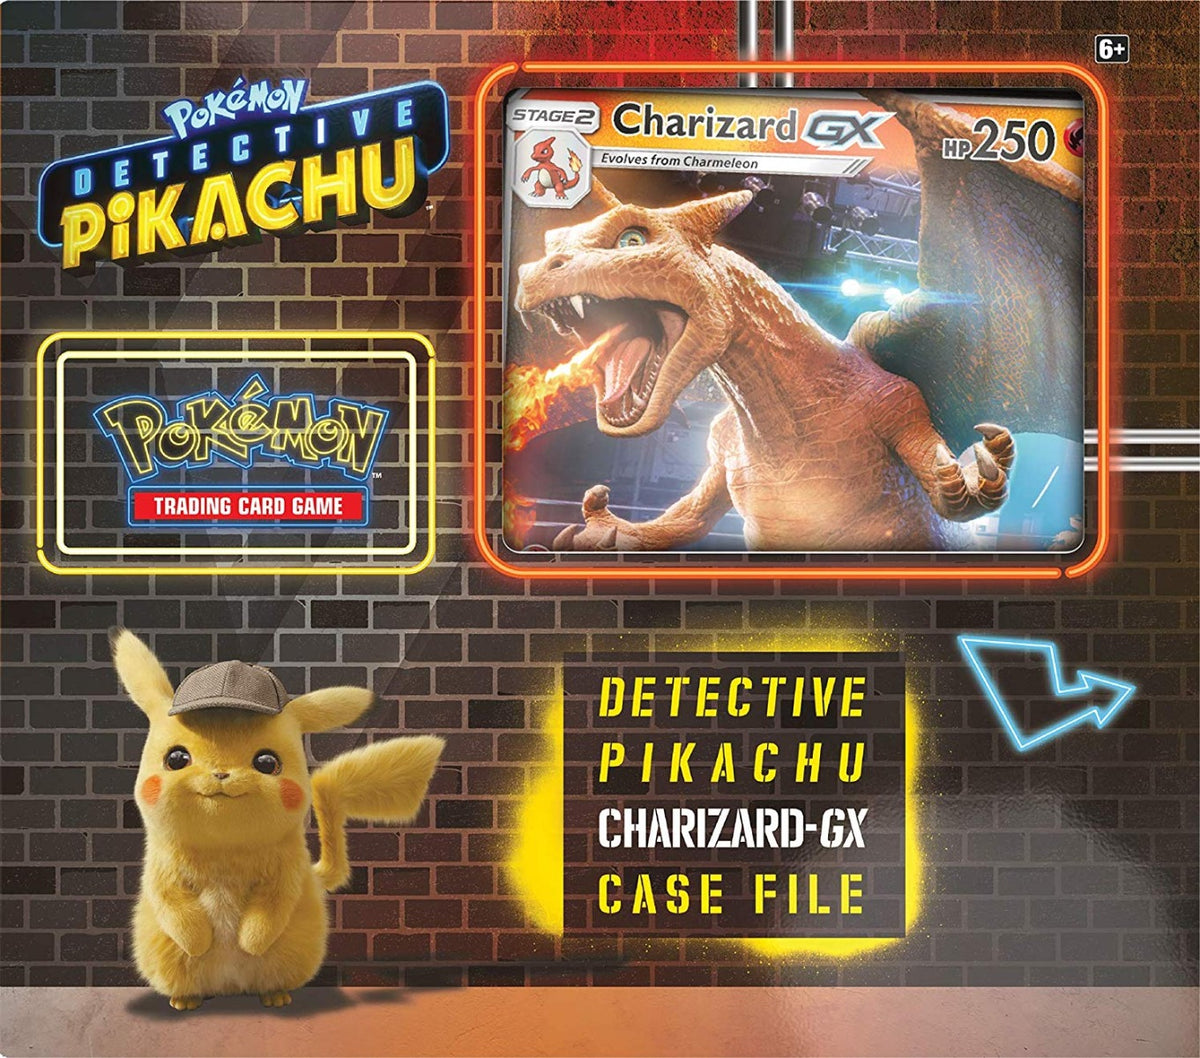 Pokémon Detective Pikachu: Charizard-GX Case File